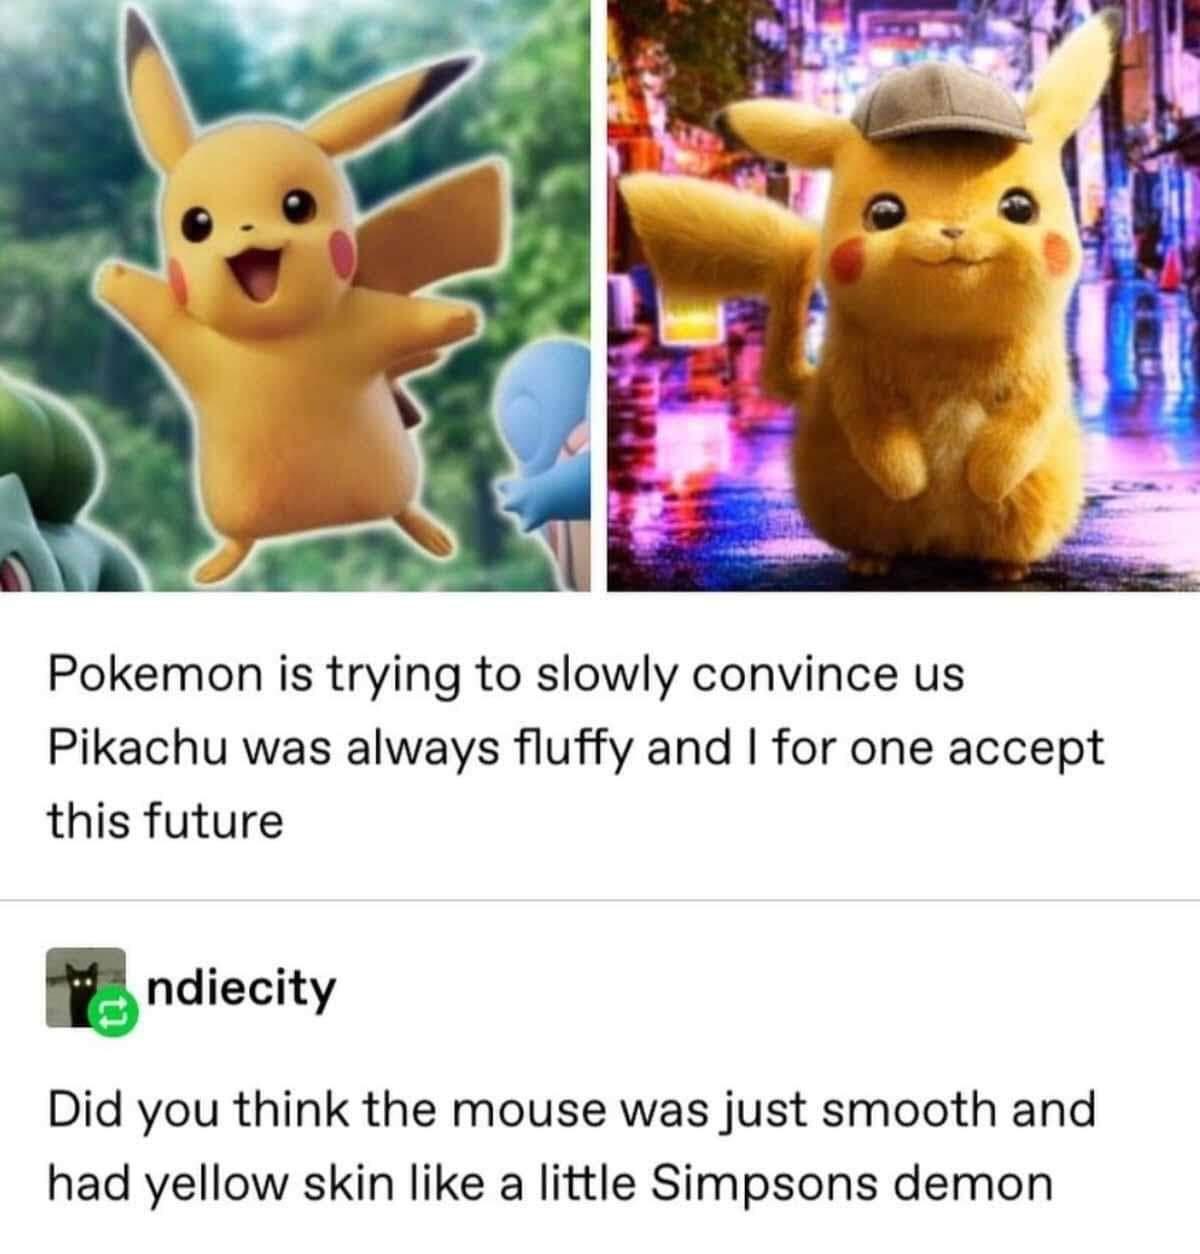 pikachu+was+always+fluffy